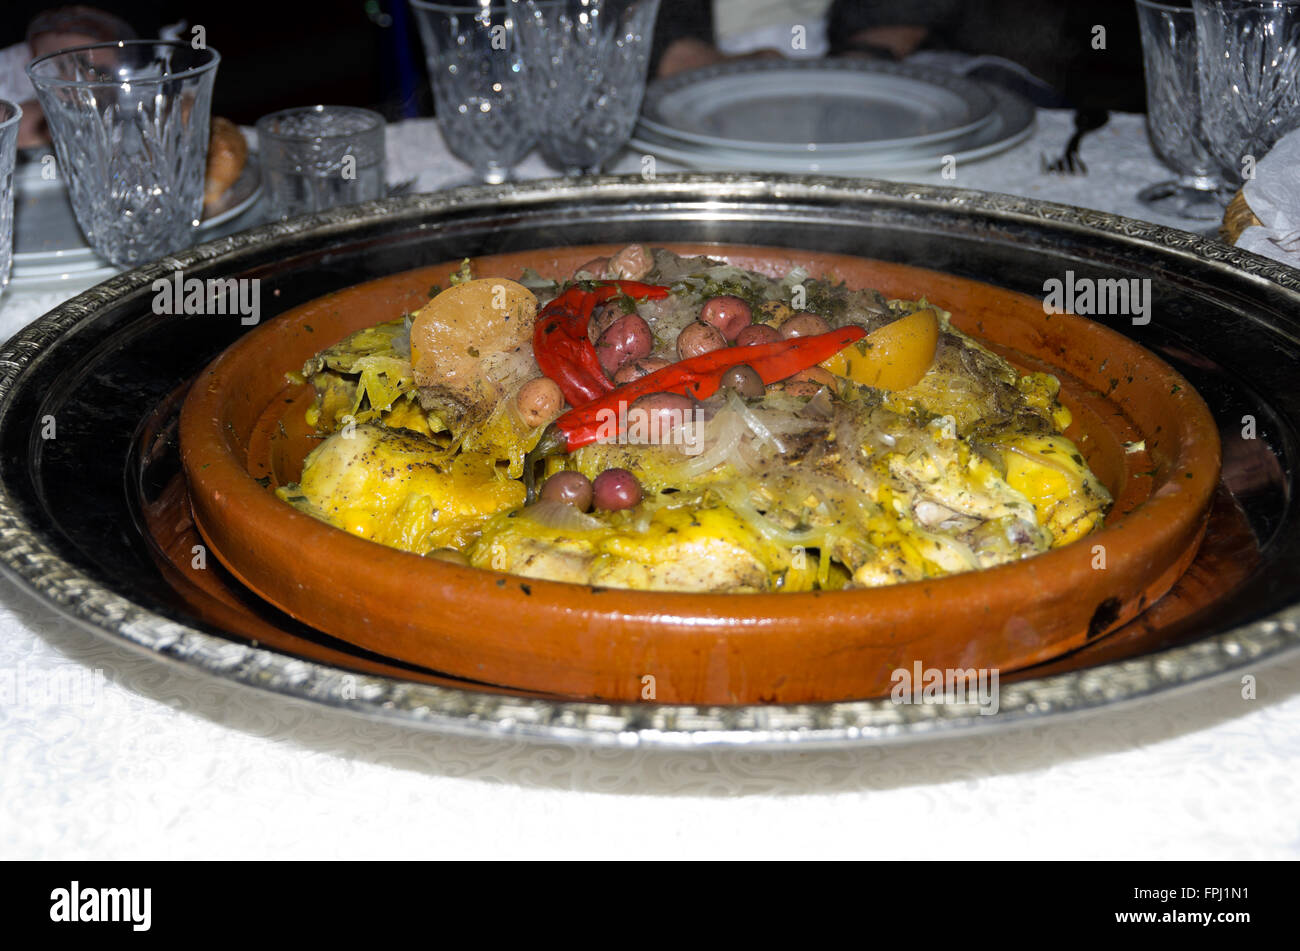 La cuisine marocaine a servi à présentation traditionnelle de la culture marocaine. Banque D'Images